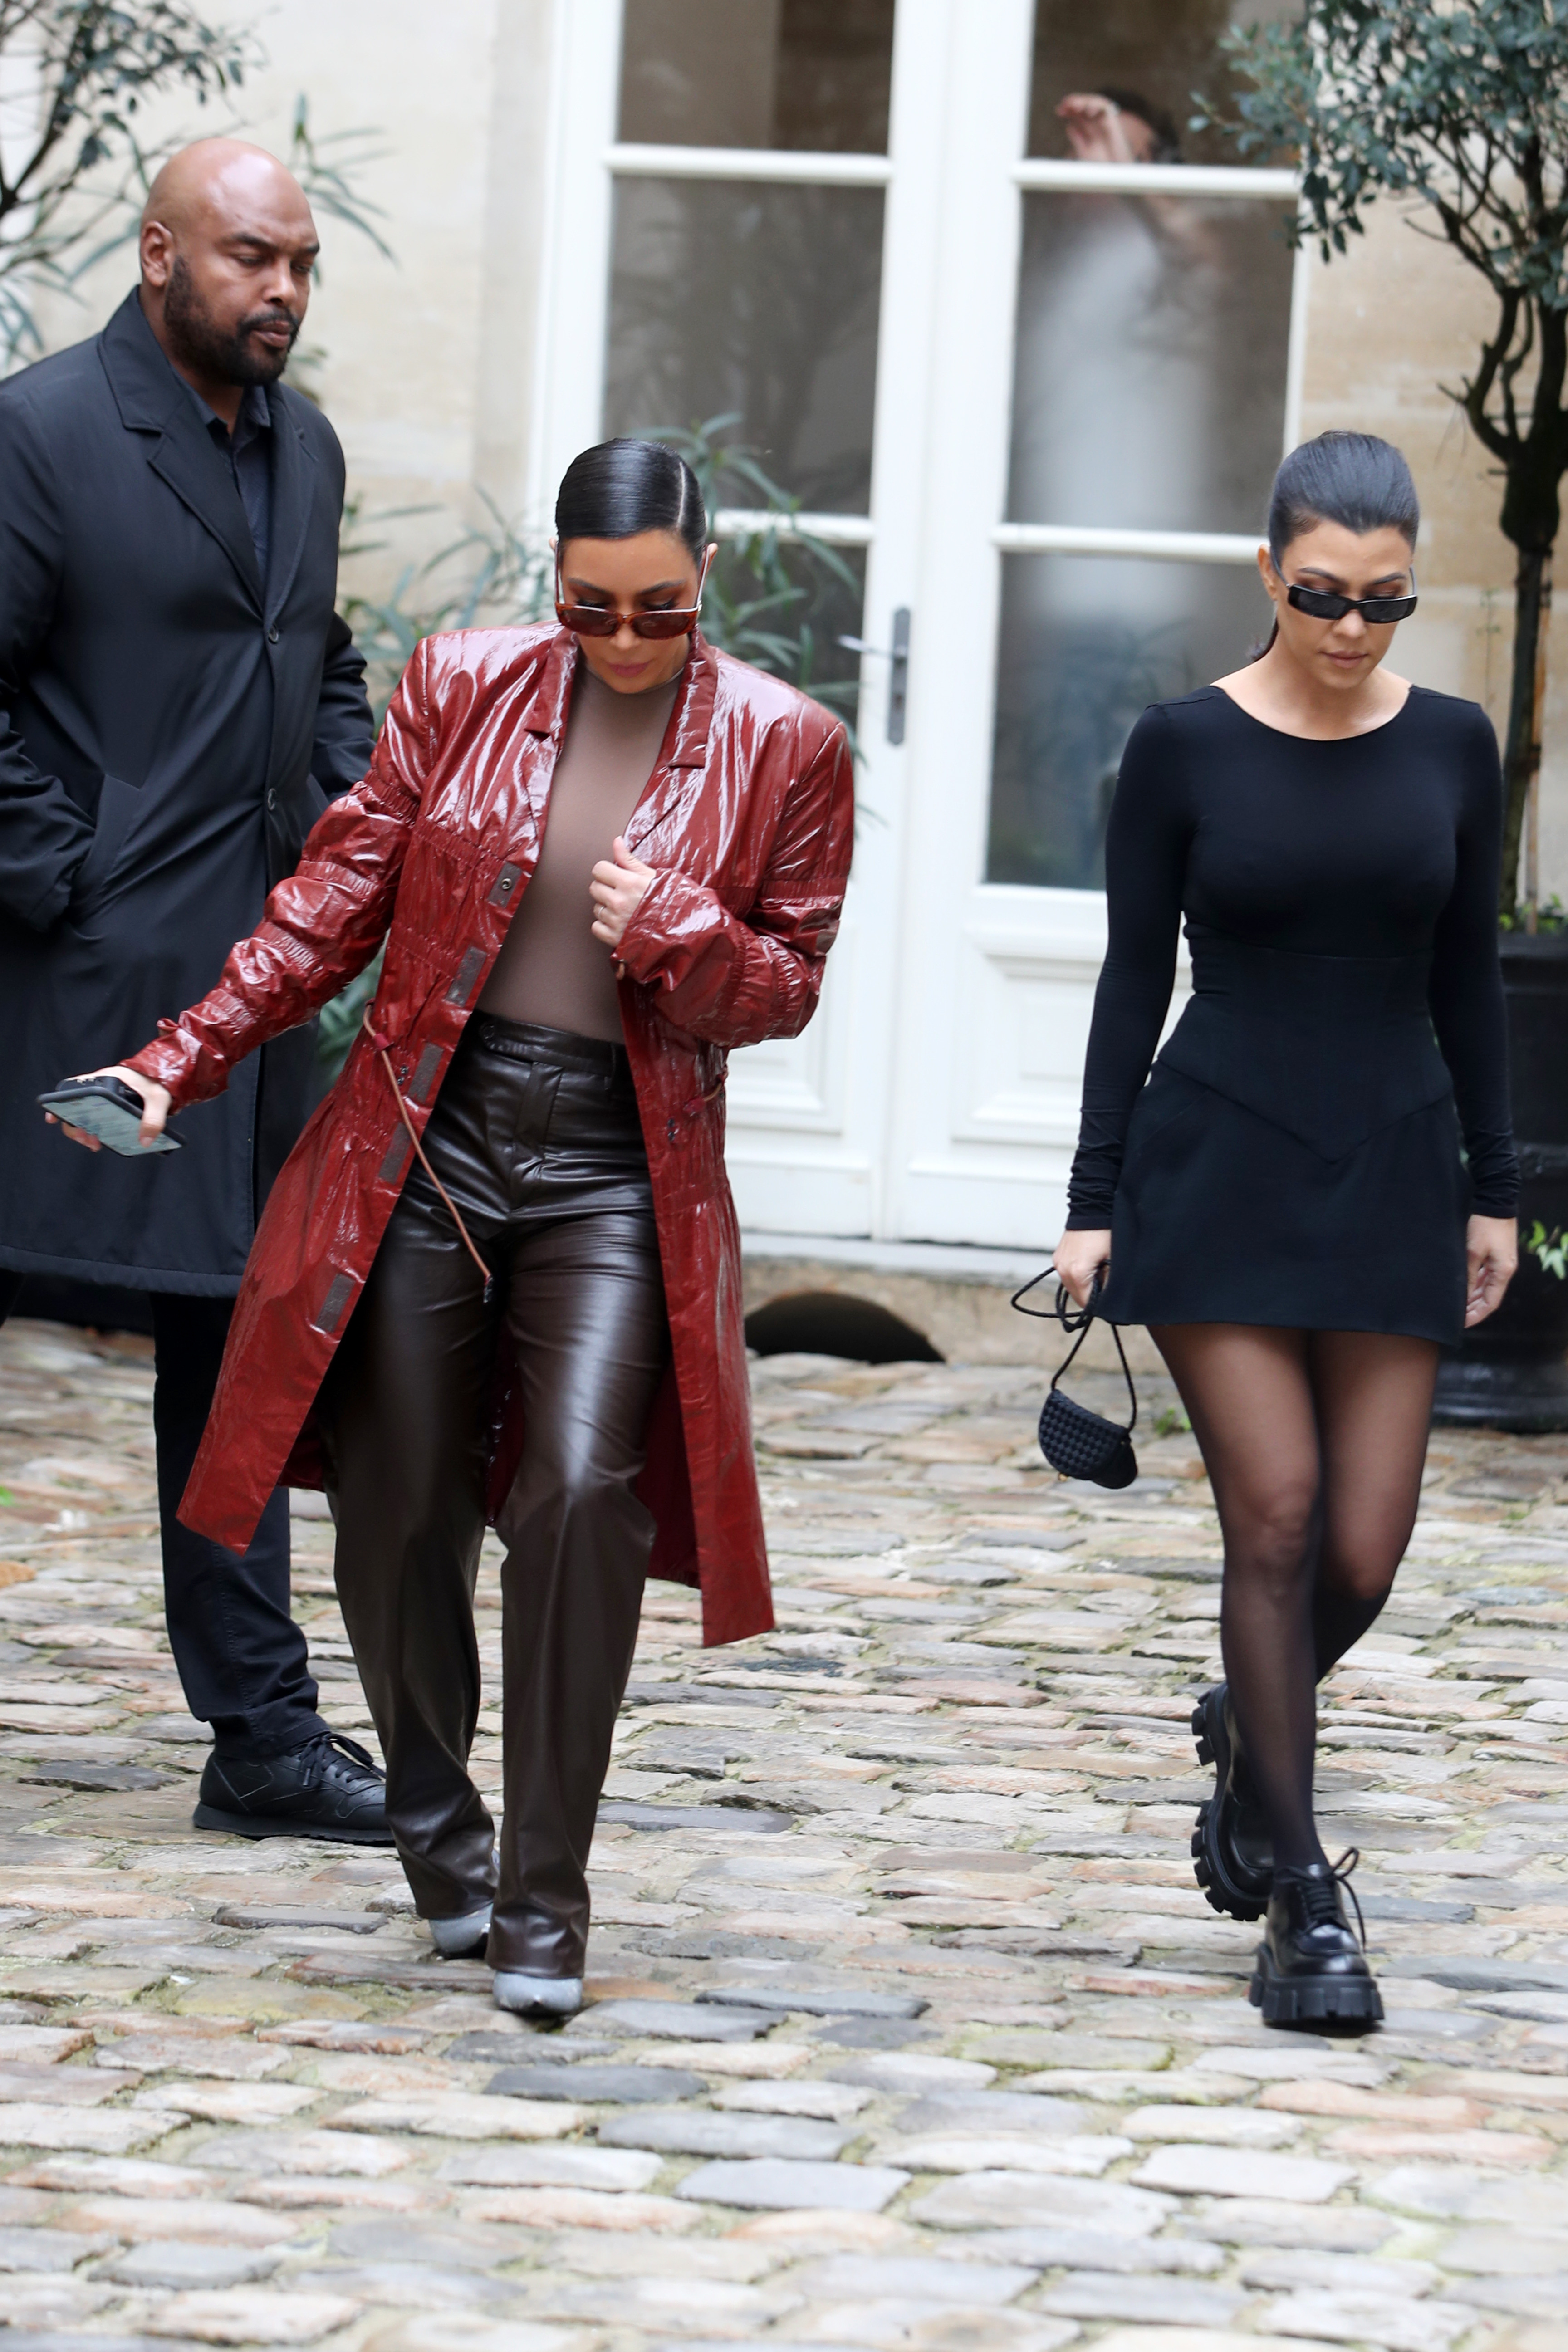 Kim Kardashian Nearly Falls During Paris Fashion Week: Photos